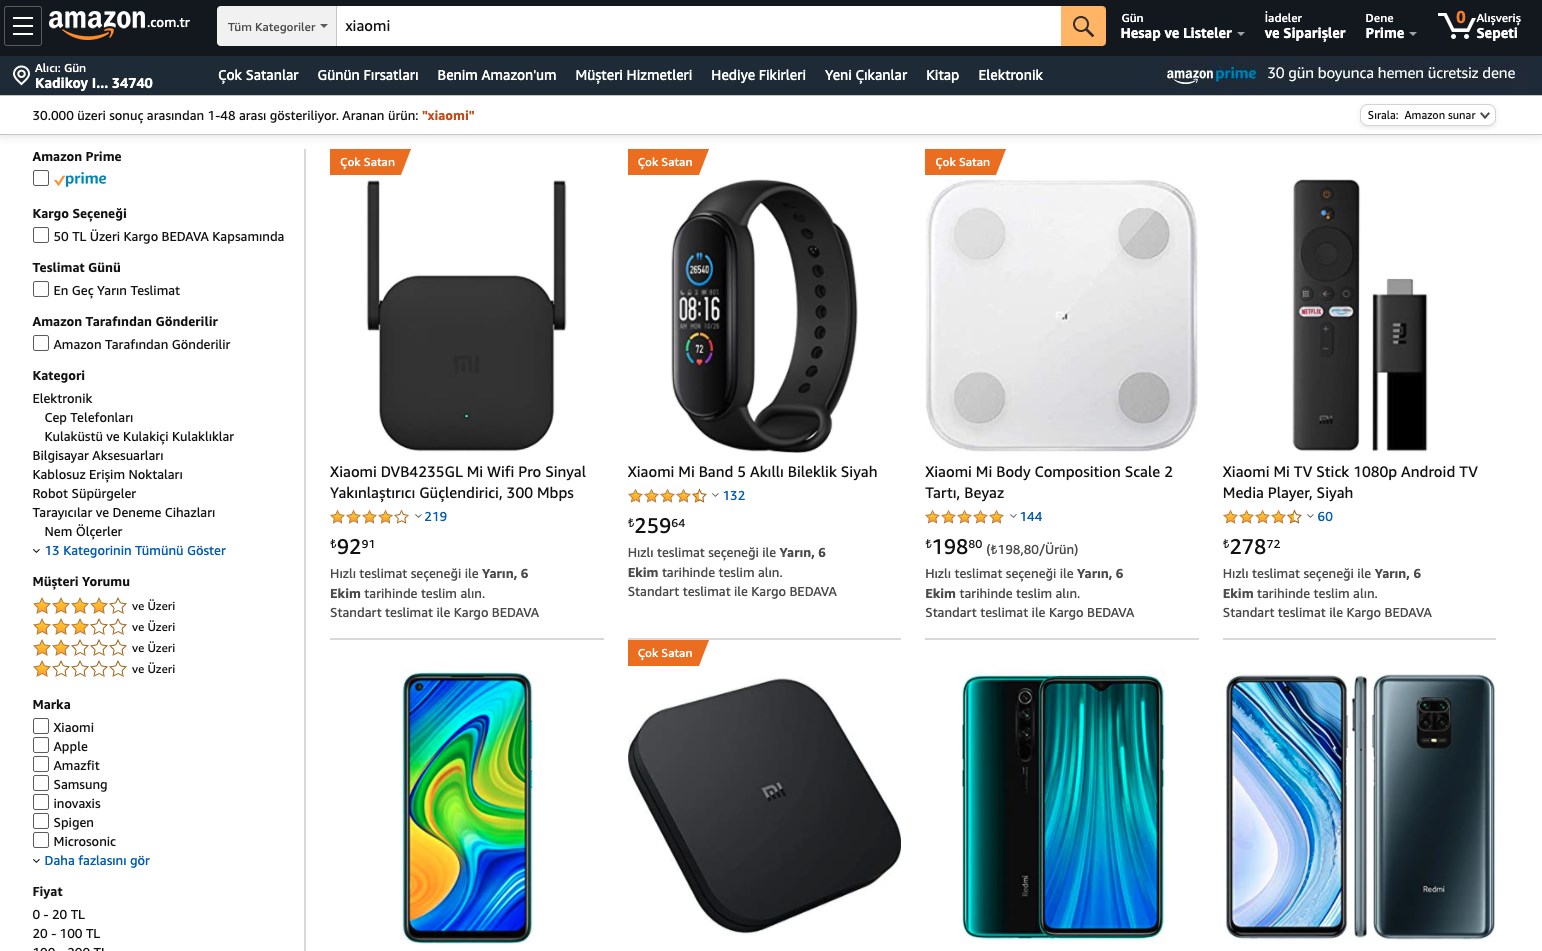 Amazon’dan Prime kullanıcılarına özel Xiaomi kampanyası